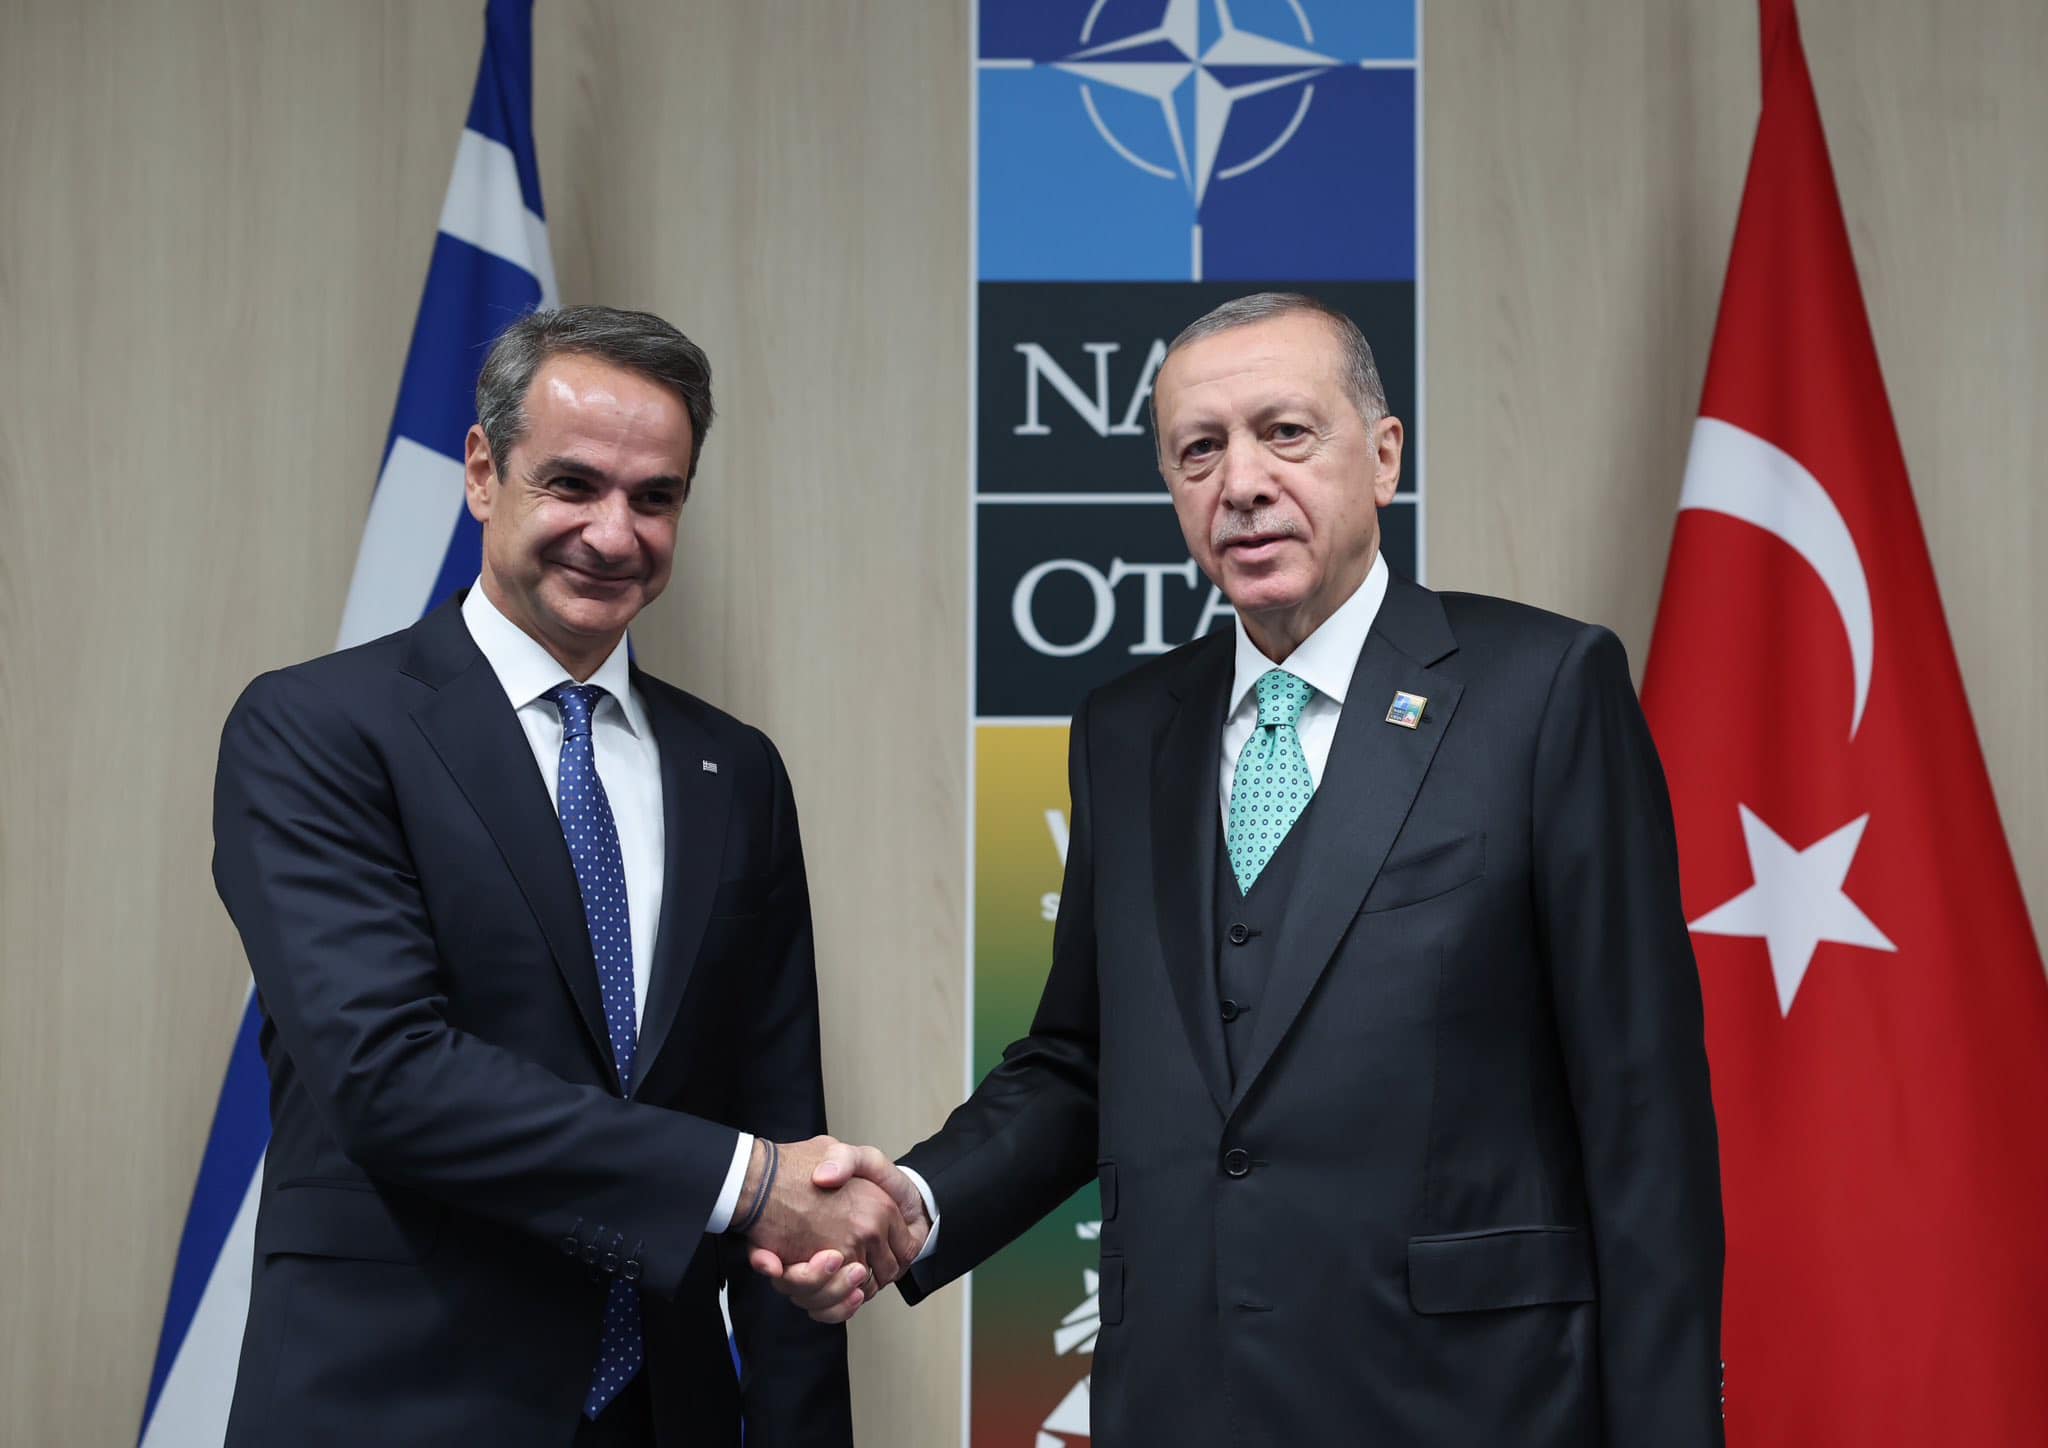 Ο Έλληνας πρωθυπουργός συναντήθηκε με τον Ρετζέπ Ερντογάν για την αναζωογόνηση των σχέσεων μεταξύ των δύο χωρών